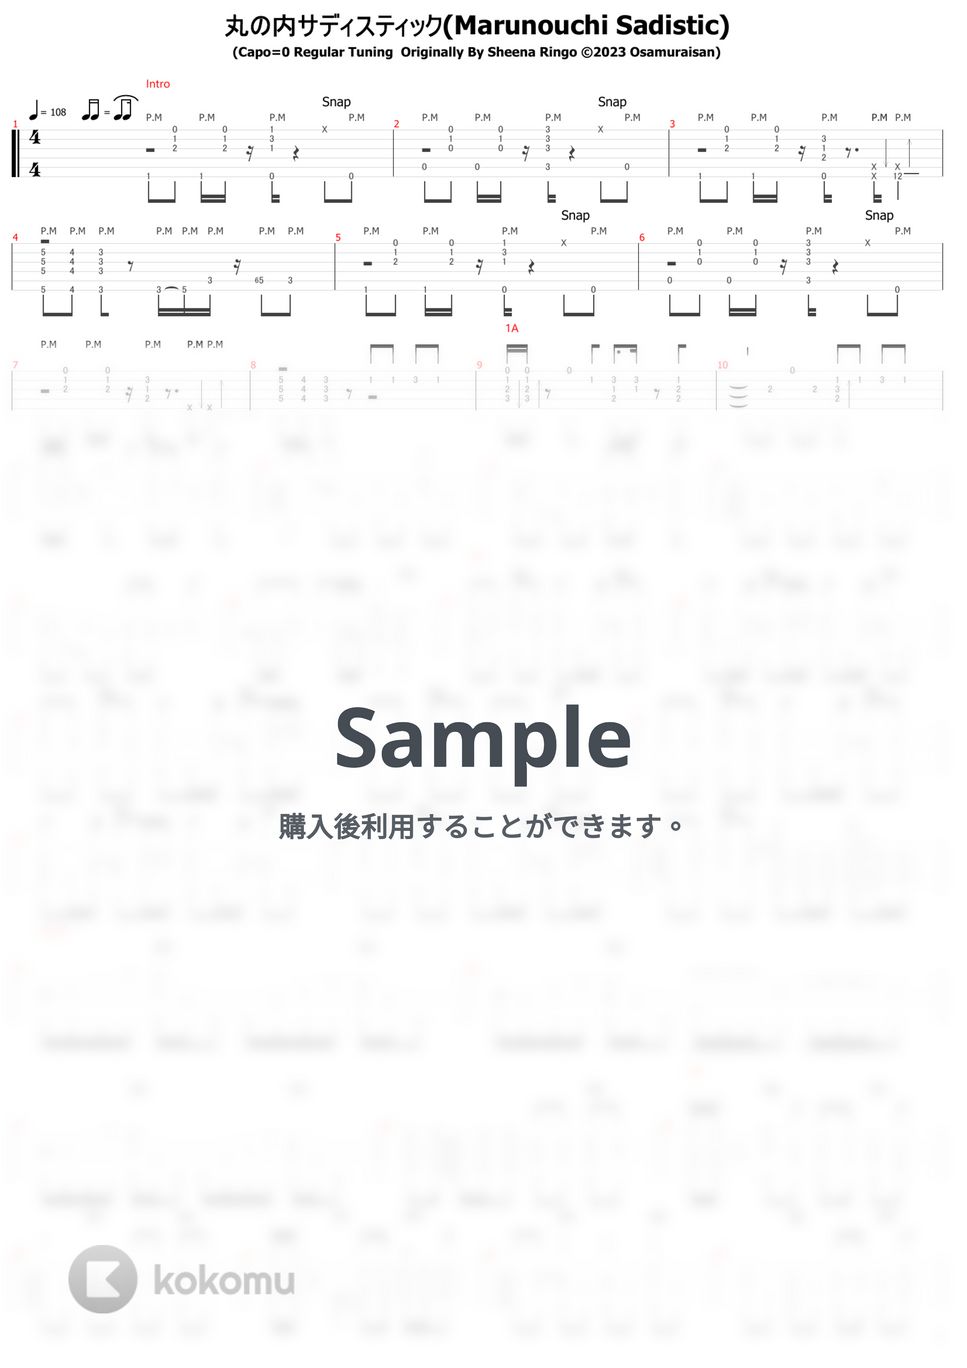 椎名林檎 - 丸の内サディスティック (ソロギター) by おさむらいさん